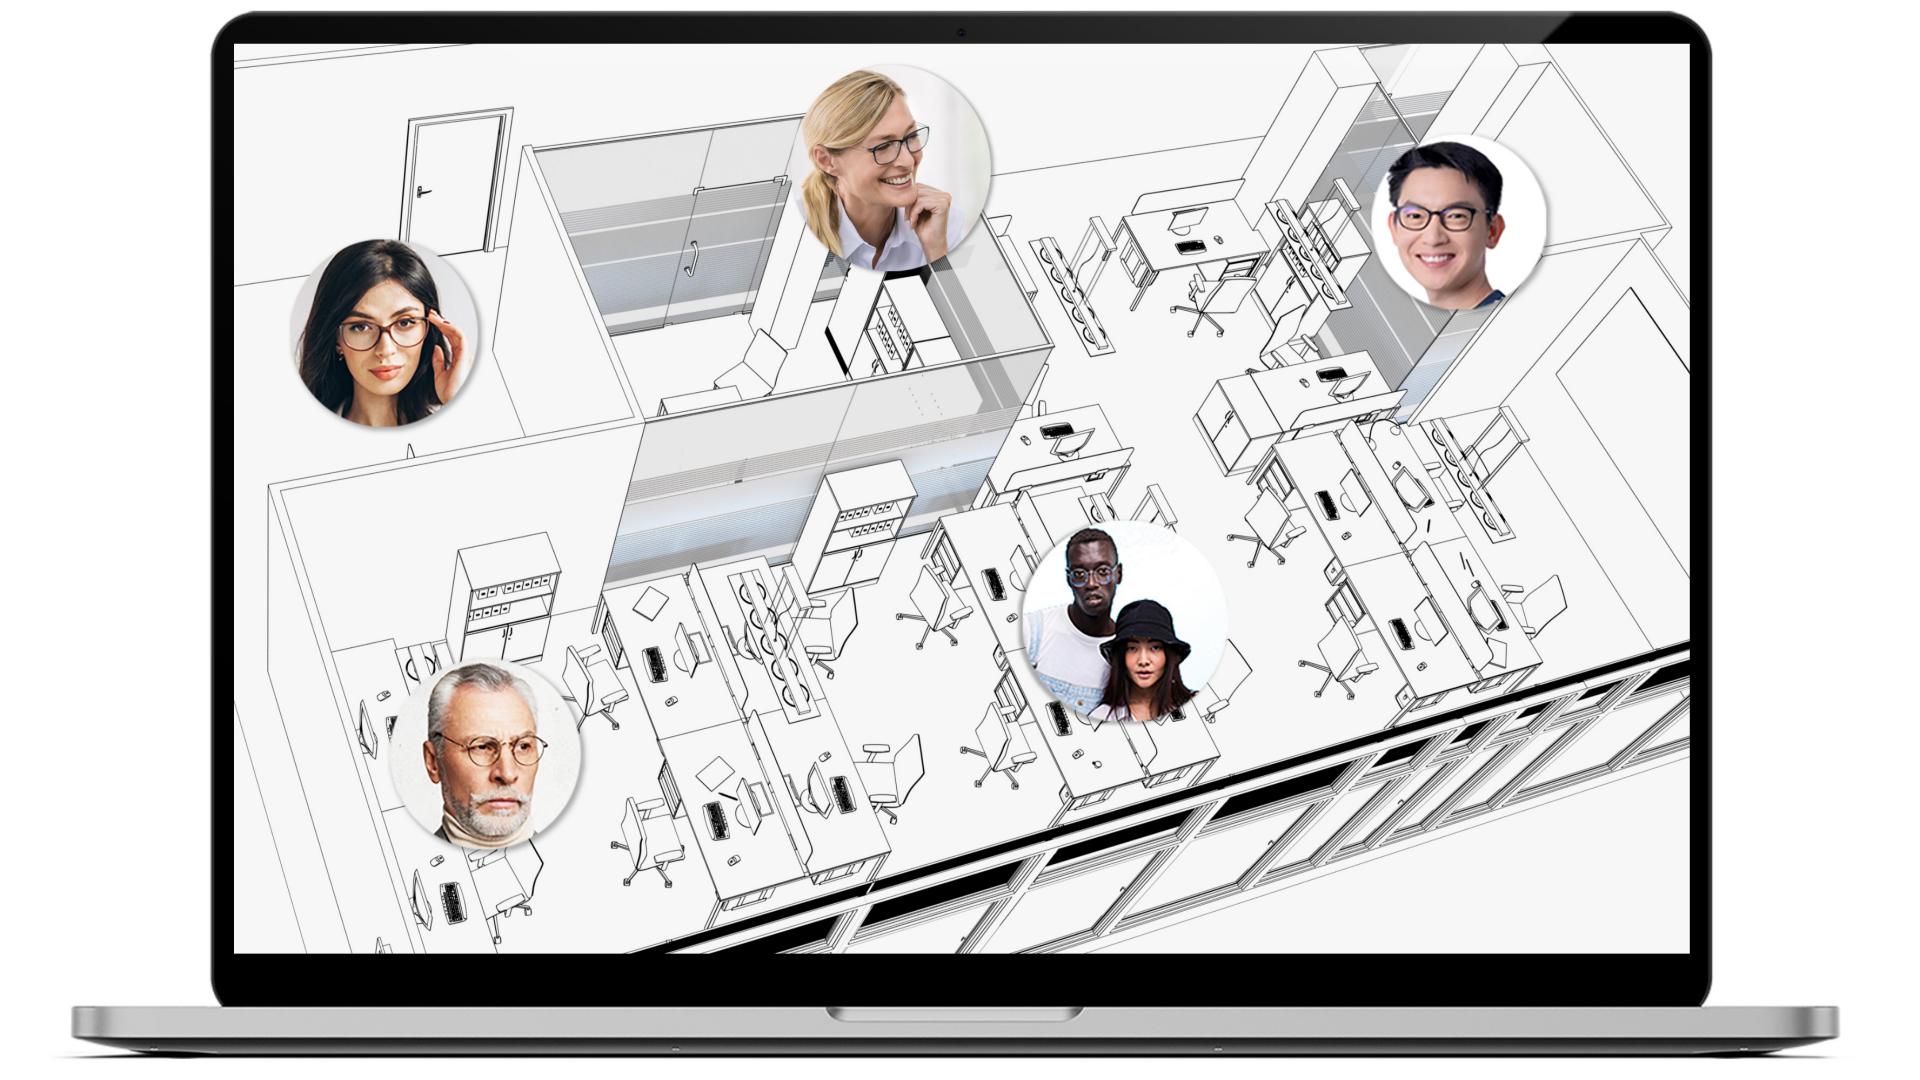 画面にオフィスのレイアウト図とノートパソコン、数名の社員が表示されている。各エリアには社員の顔が小さな円の中に表示され、全員がZEISS Officeメガネを掛けている。